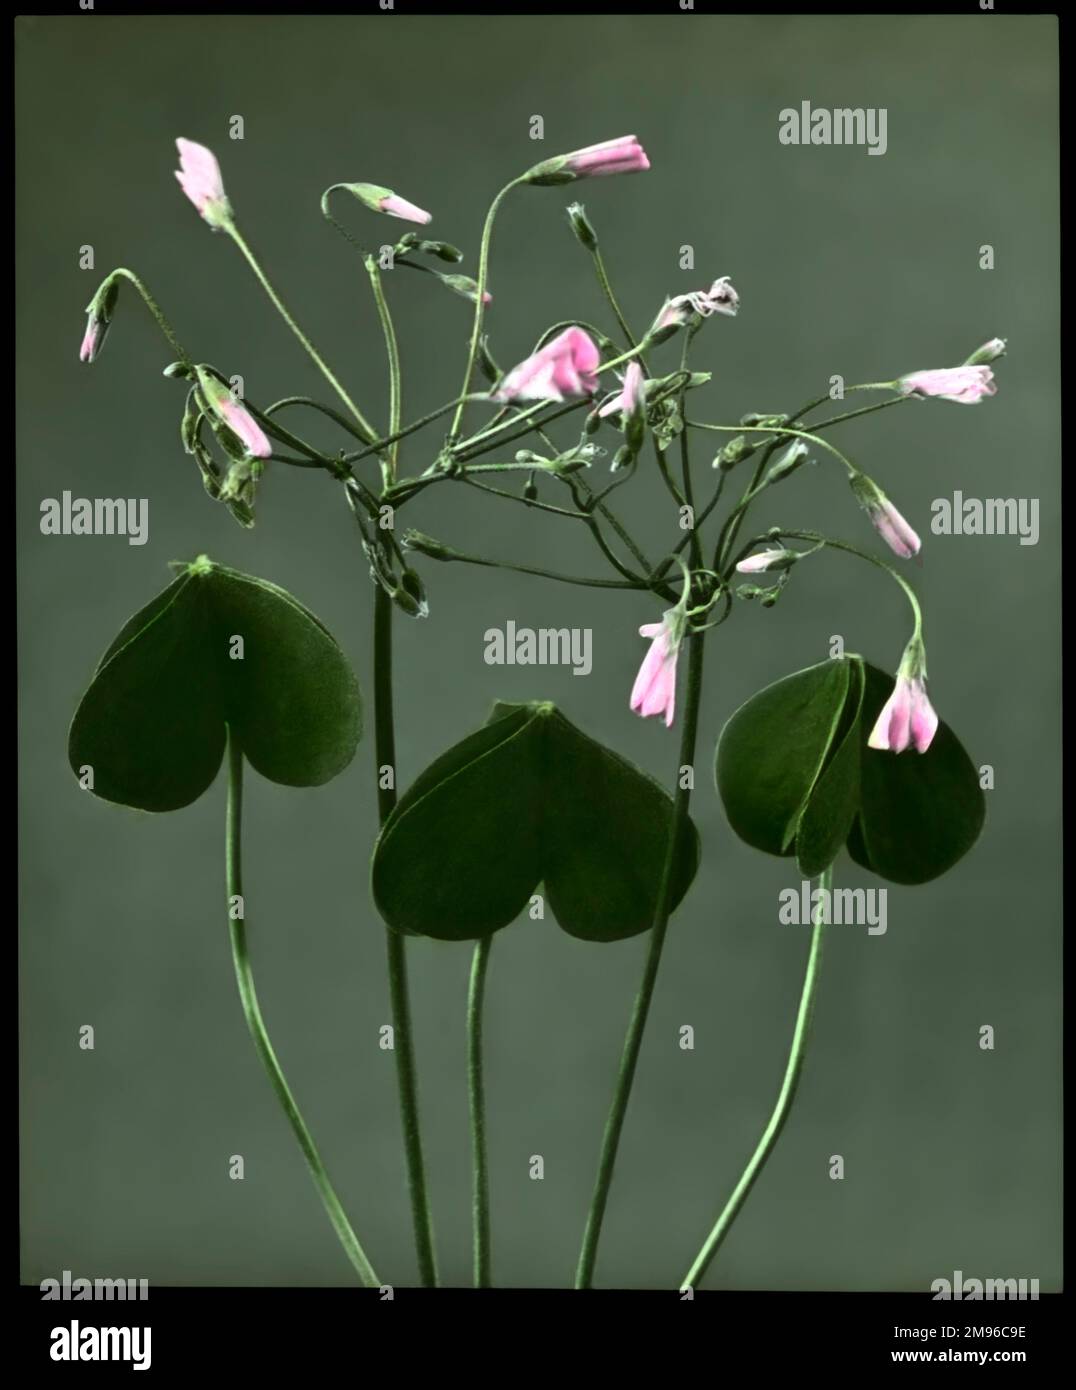 Oxalis crassipes rosea (Strawberry Oxalis, Wood Sorrel), plante à fleurs vivaces de la famille des Oxalidaceae, avec des fleurs roses. Vu ici la nuit, avec les fleurs fermées. Banque D'Images